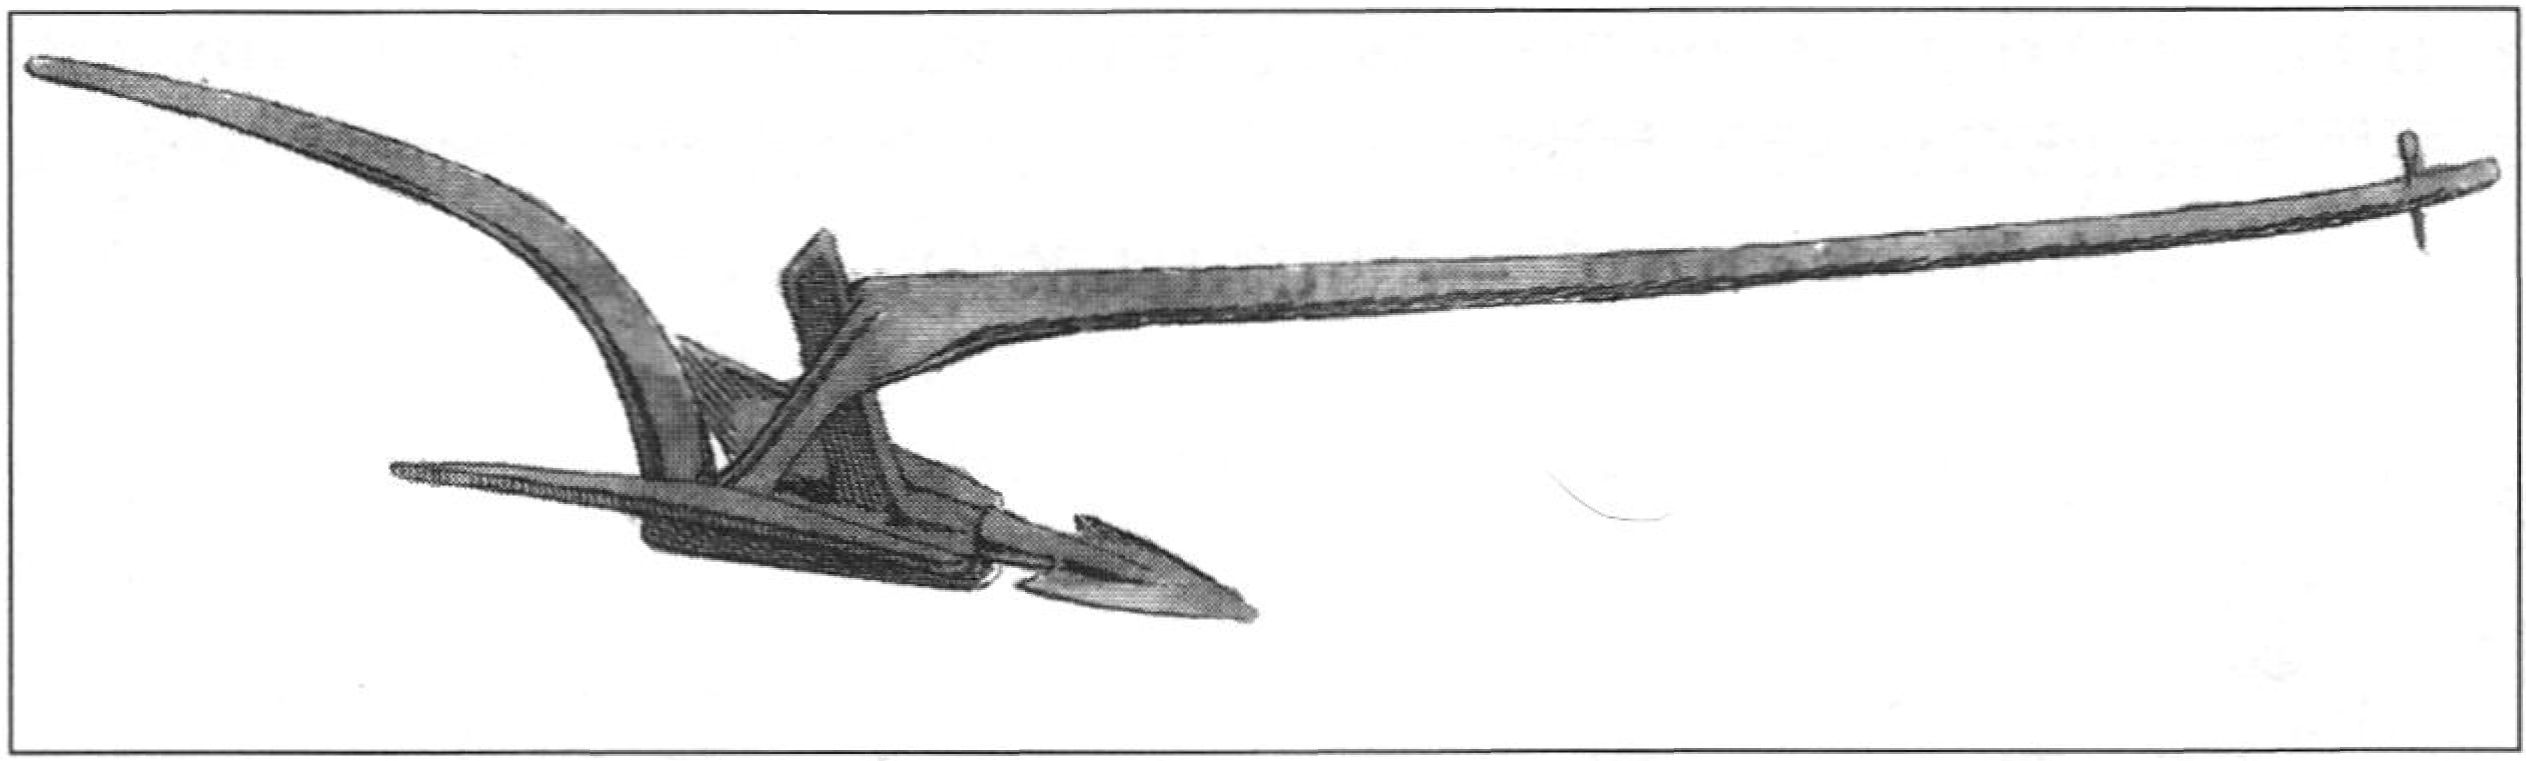 Лёгкий плуг сабан для обработки виноградных междурядий. Рис. из: Pallas, 1801